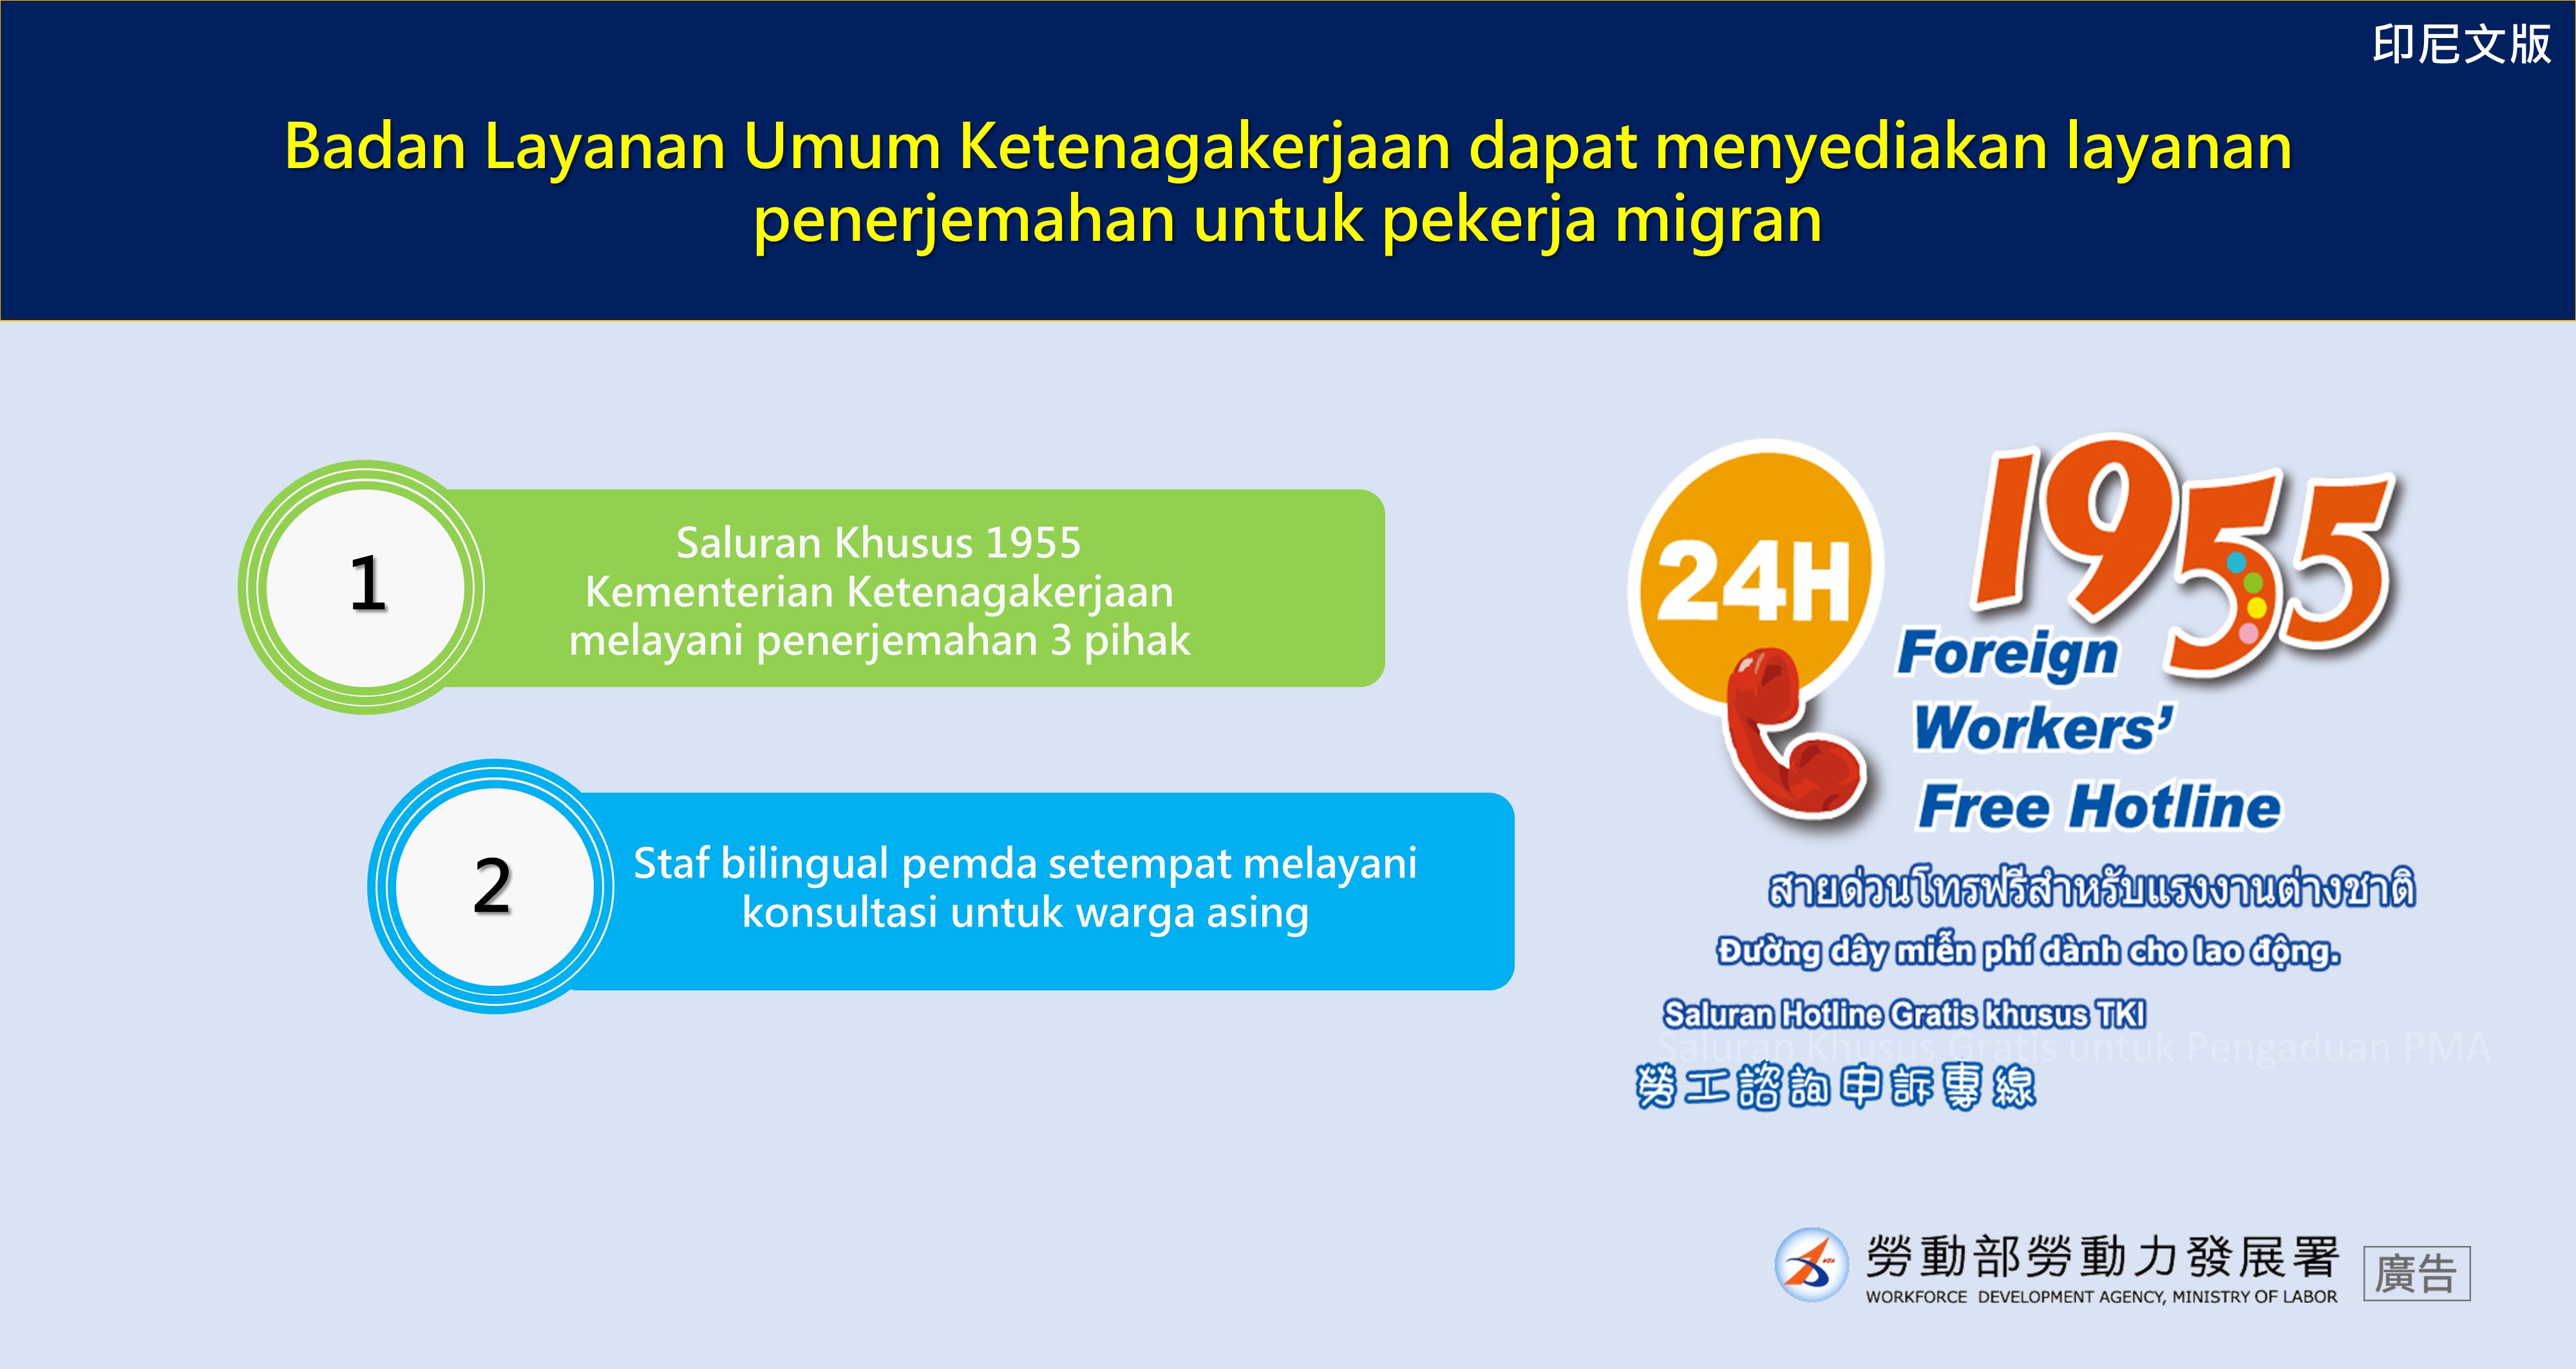 公立就業服務機構辦轉換可提供移工通譯服務-印尼文.JPG